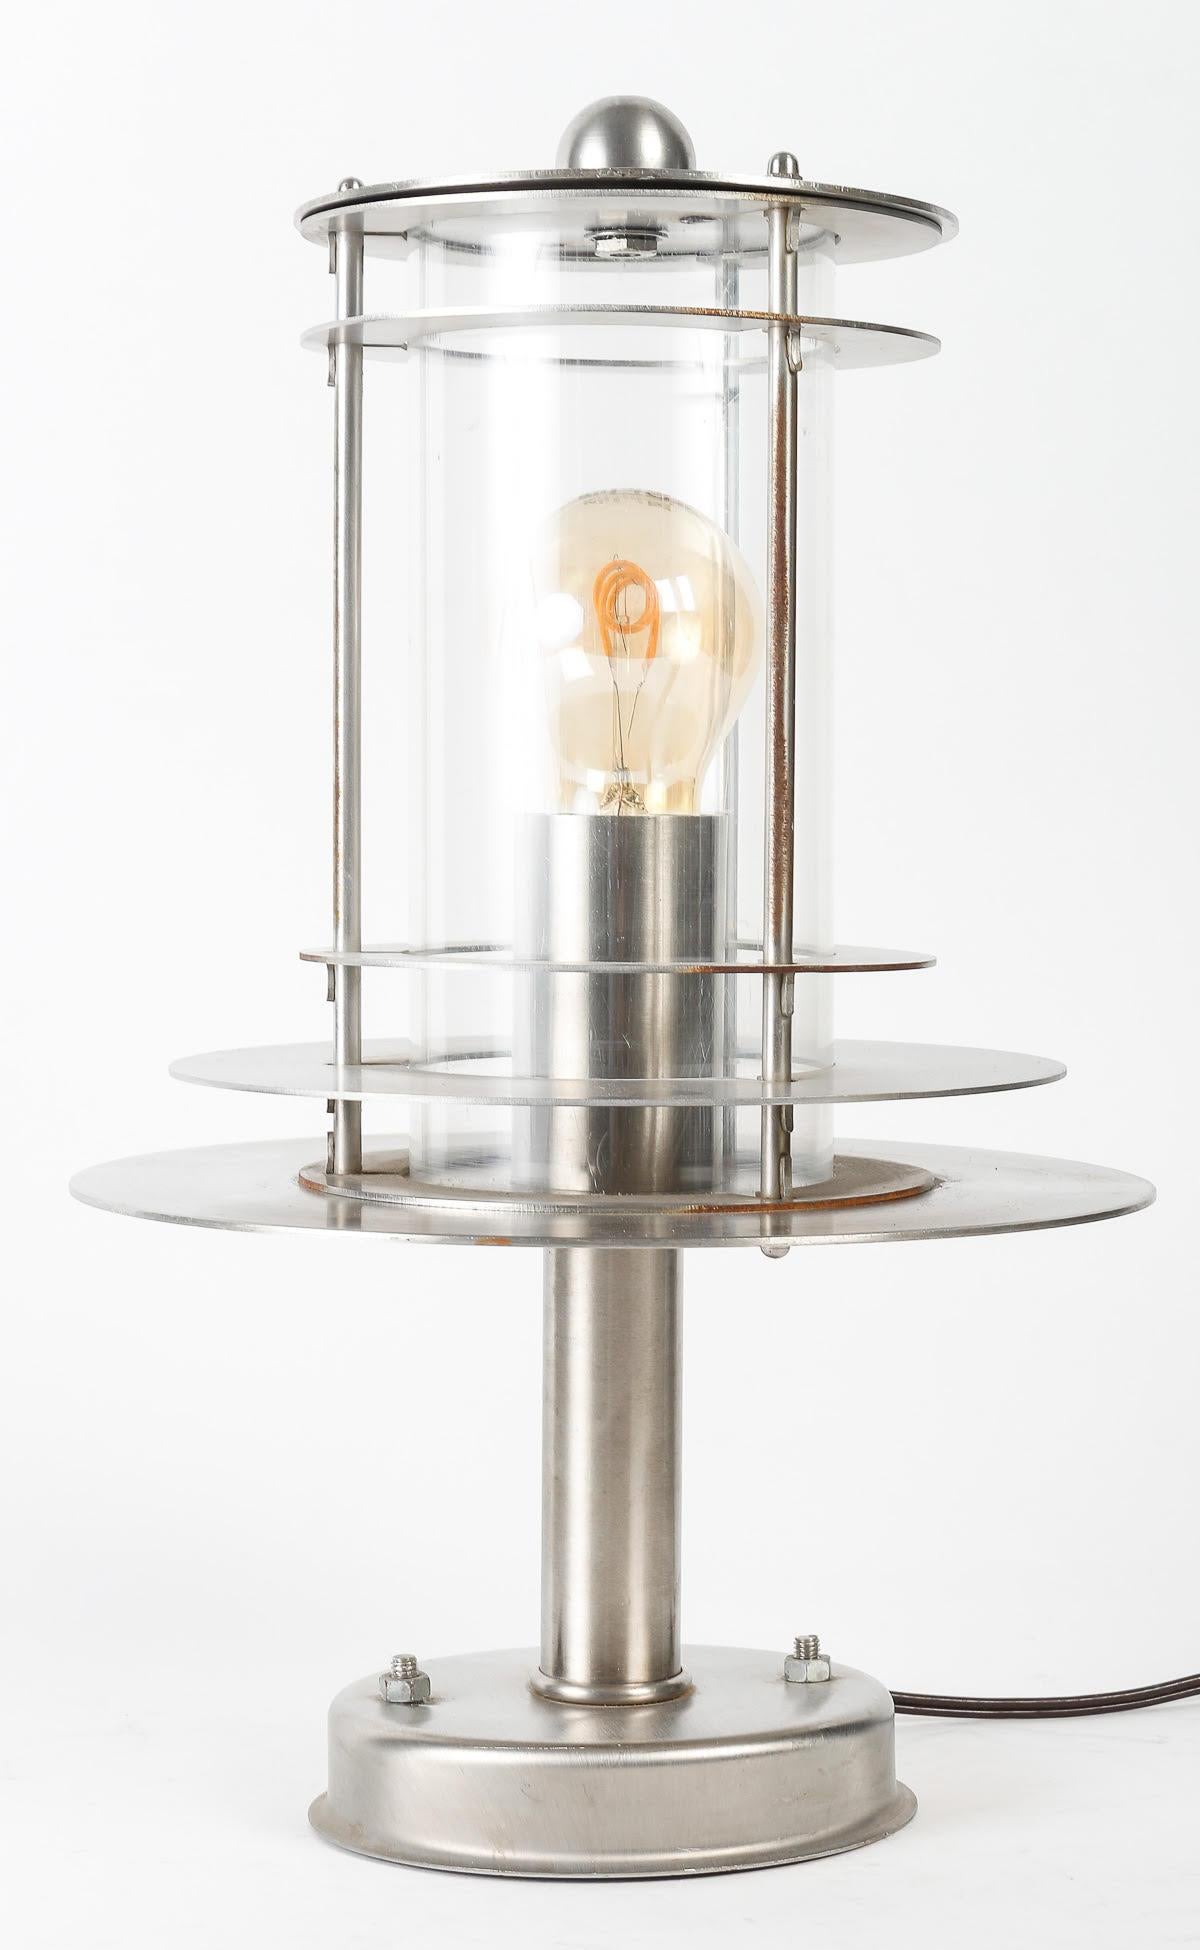 Lampe de table en acier, travail du 20e siècle.

Lampe design du 20e siècle en acier.
h : 39cm, p : 25cm